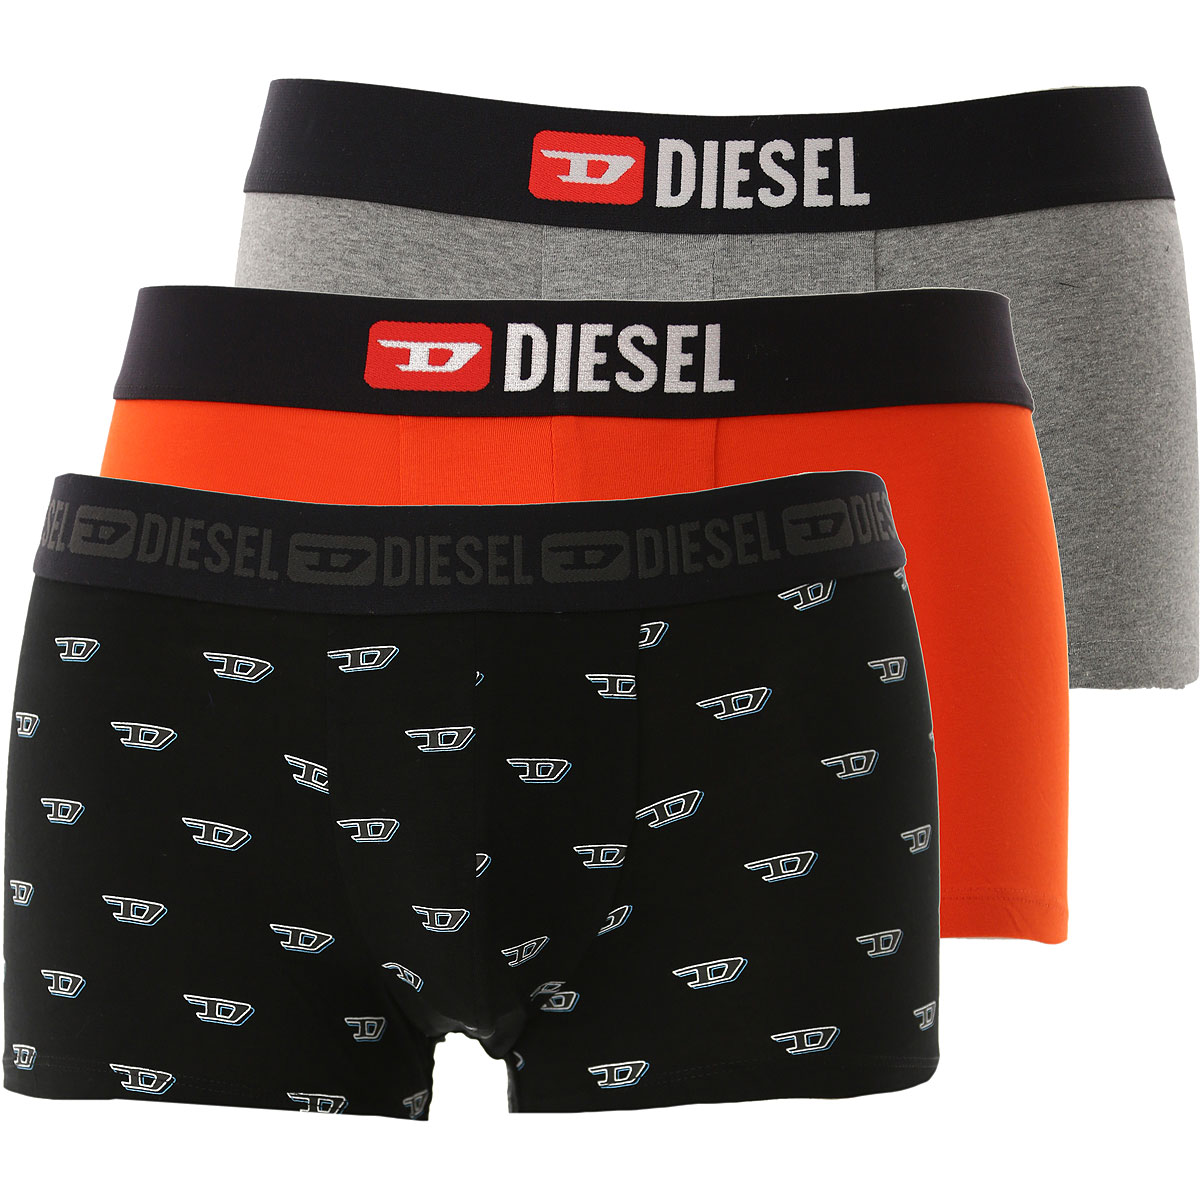 Diesel Boxer Shorts für Herren, Unterhose, Short, Boxer Günstig im Sale, 3 Pack, Schwarz, Baumwolle, 2017, L XL